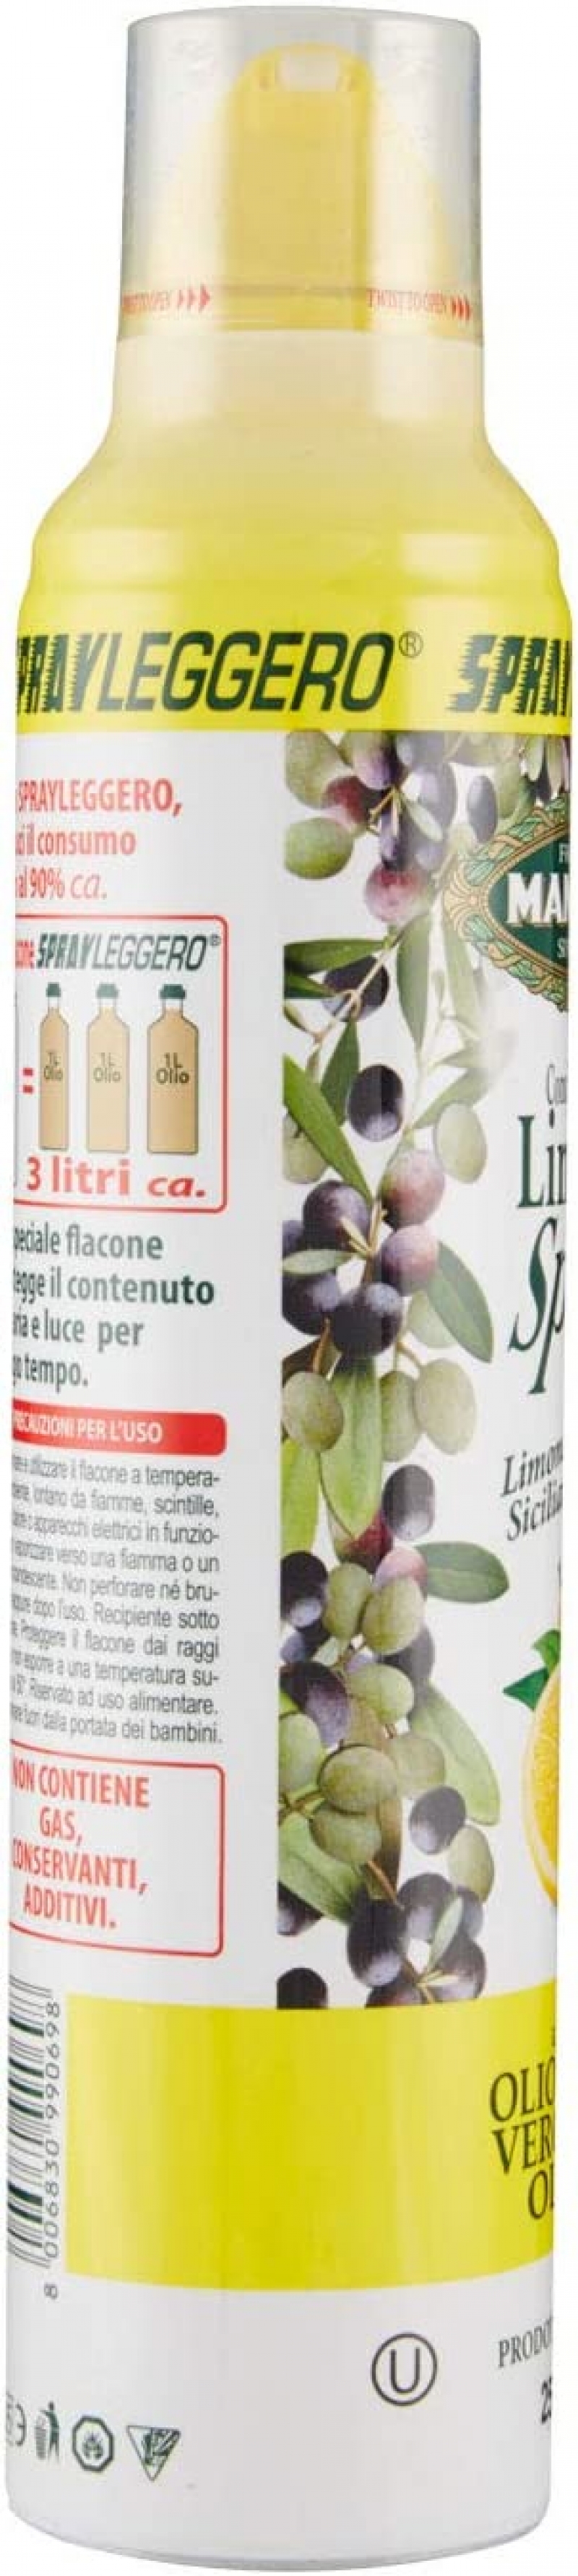 Olio di Extra Vergine di Oliva Spray all'aglio 250 ml MANTOVA